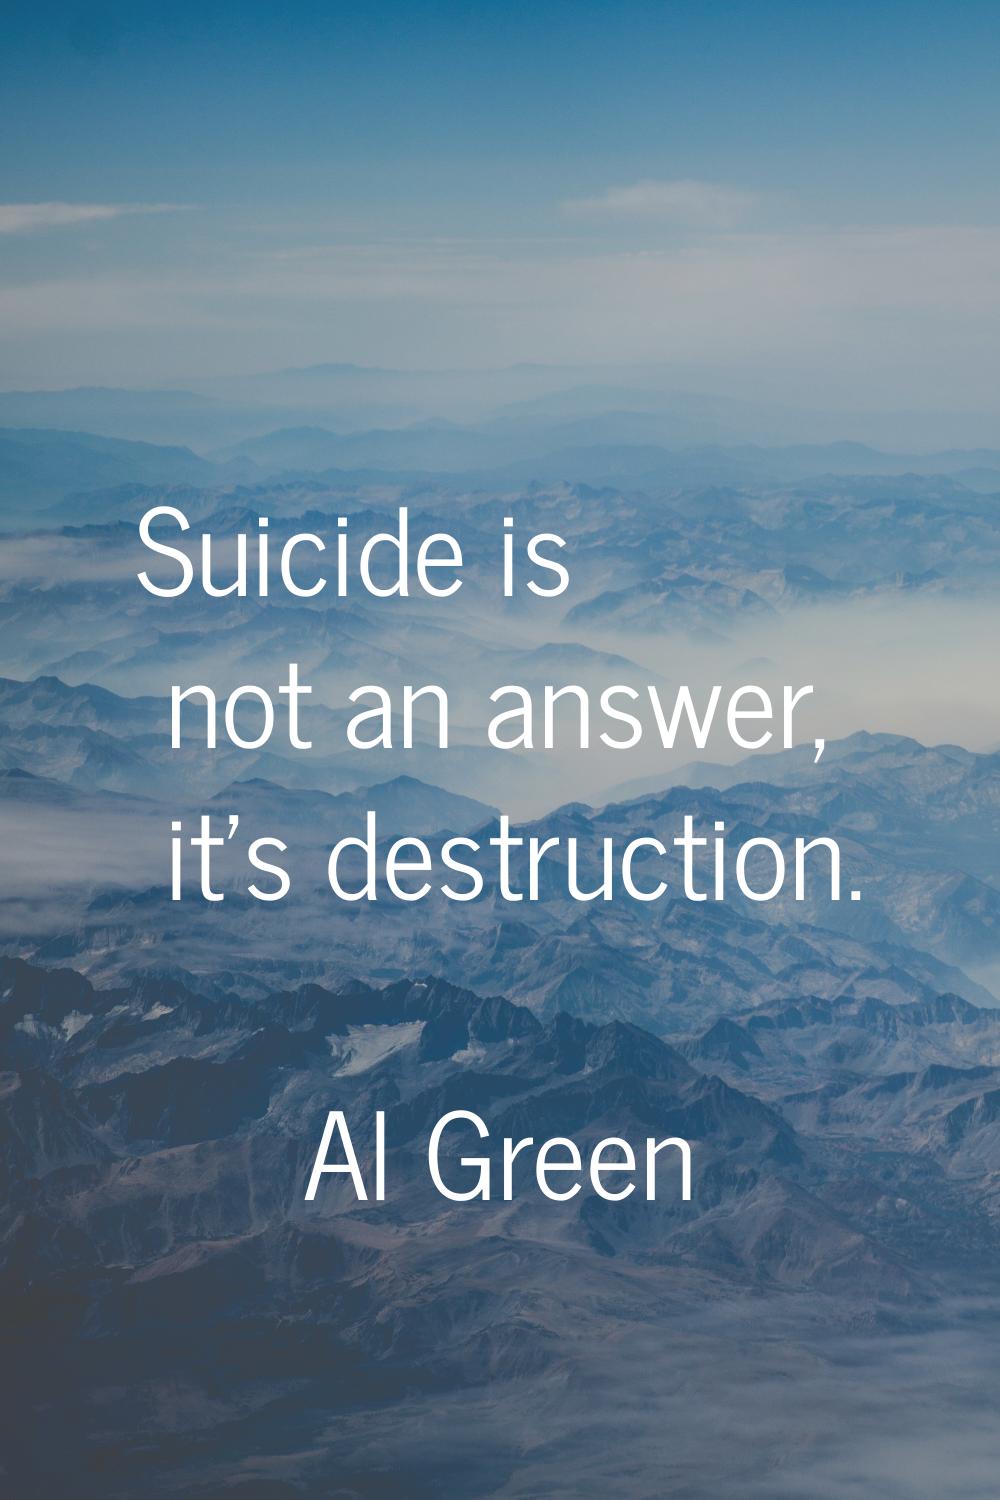 Suicide is not an answer, it's destruction.